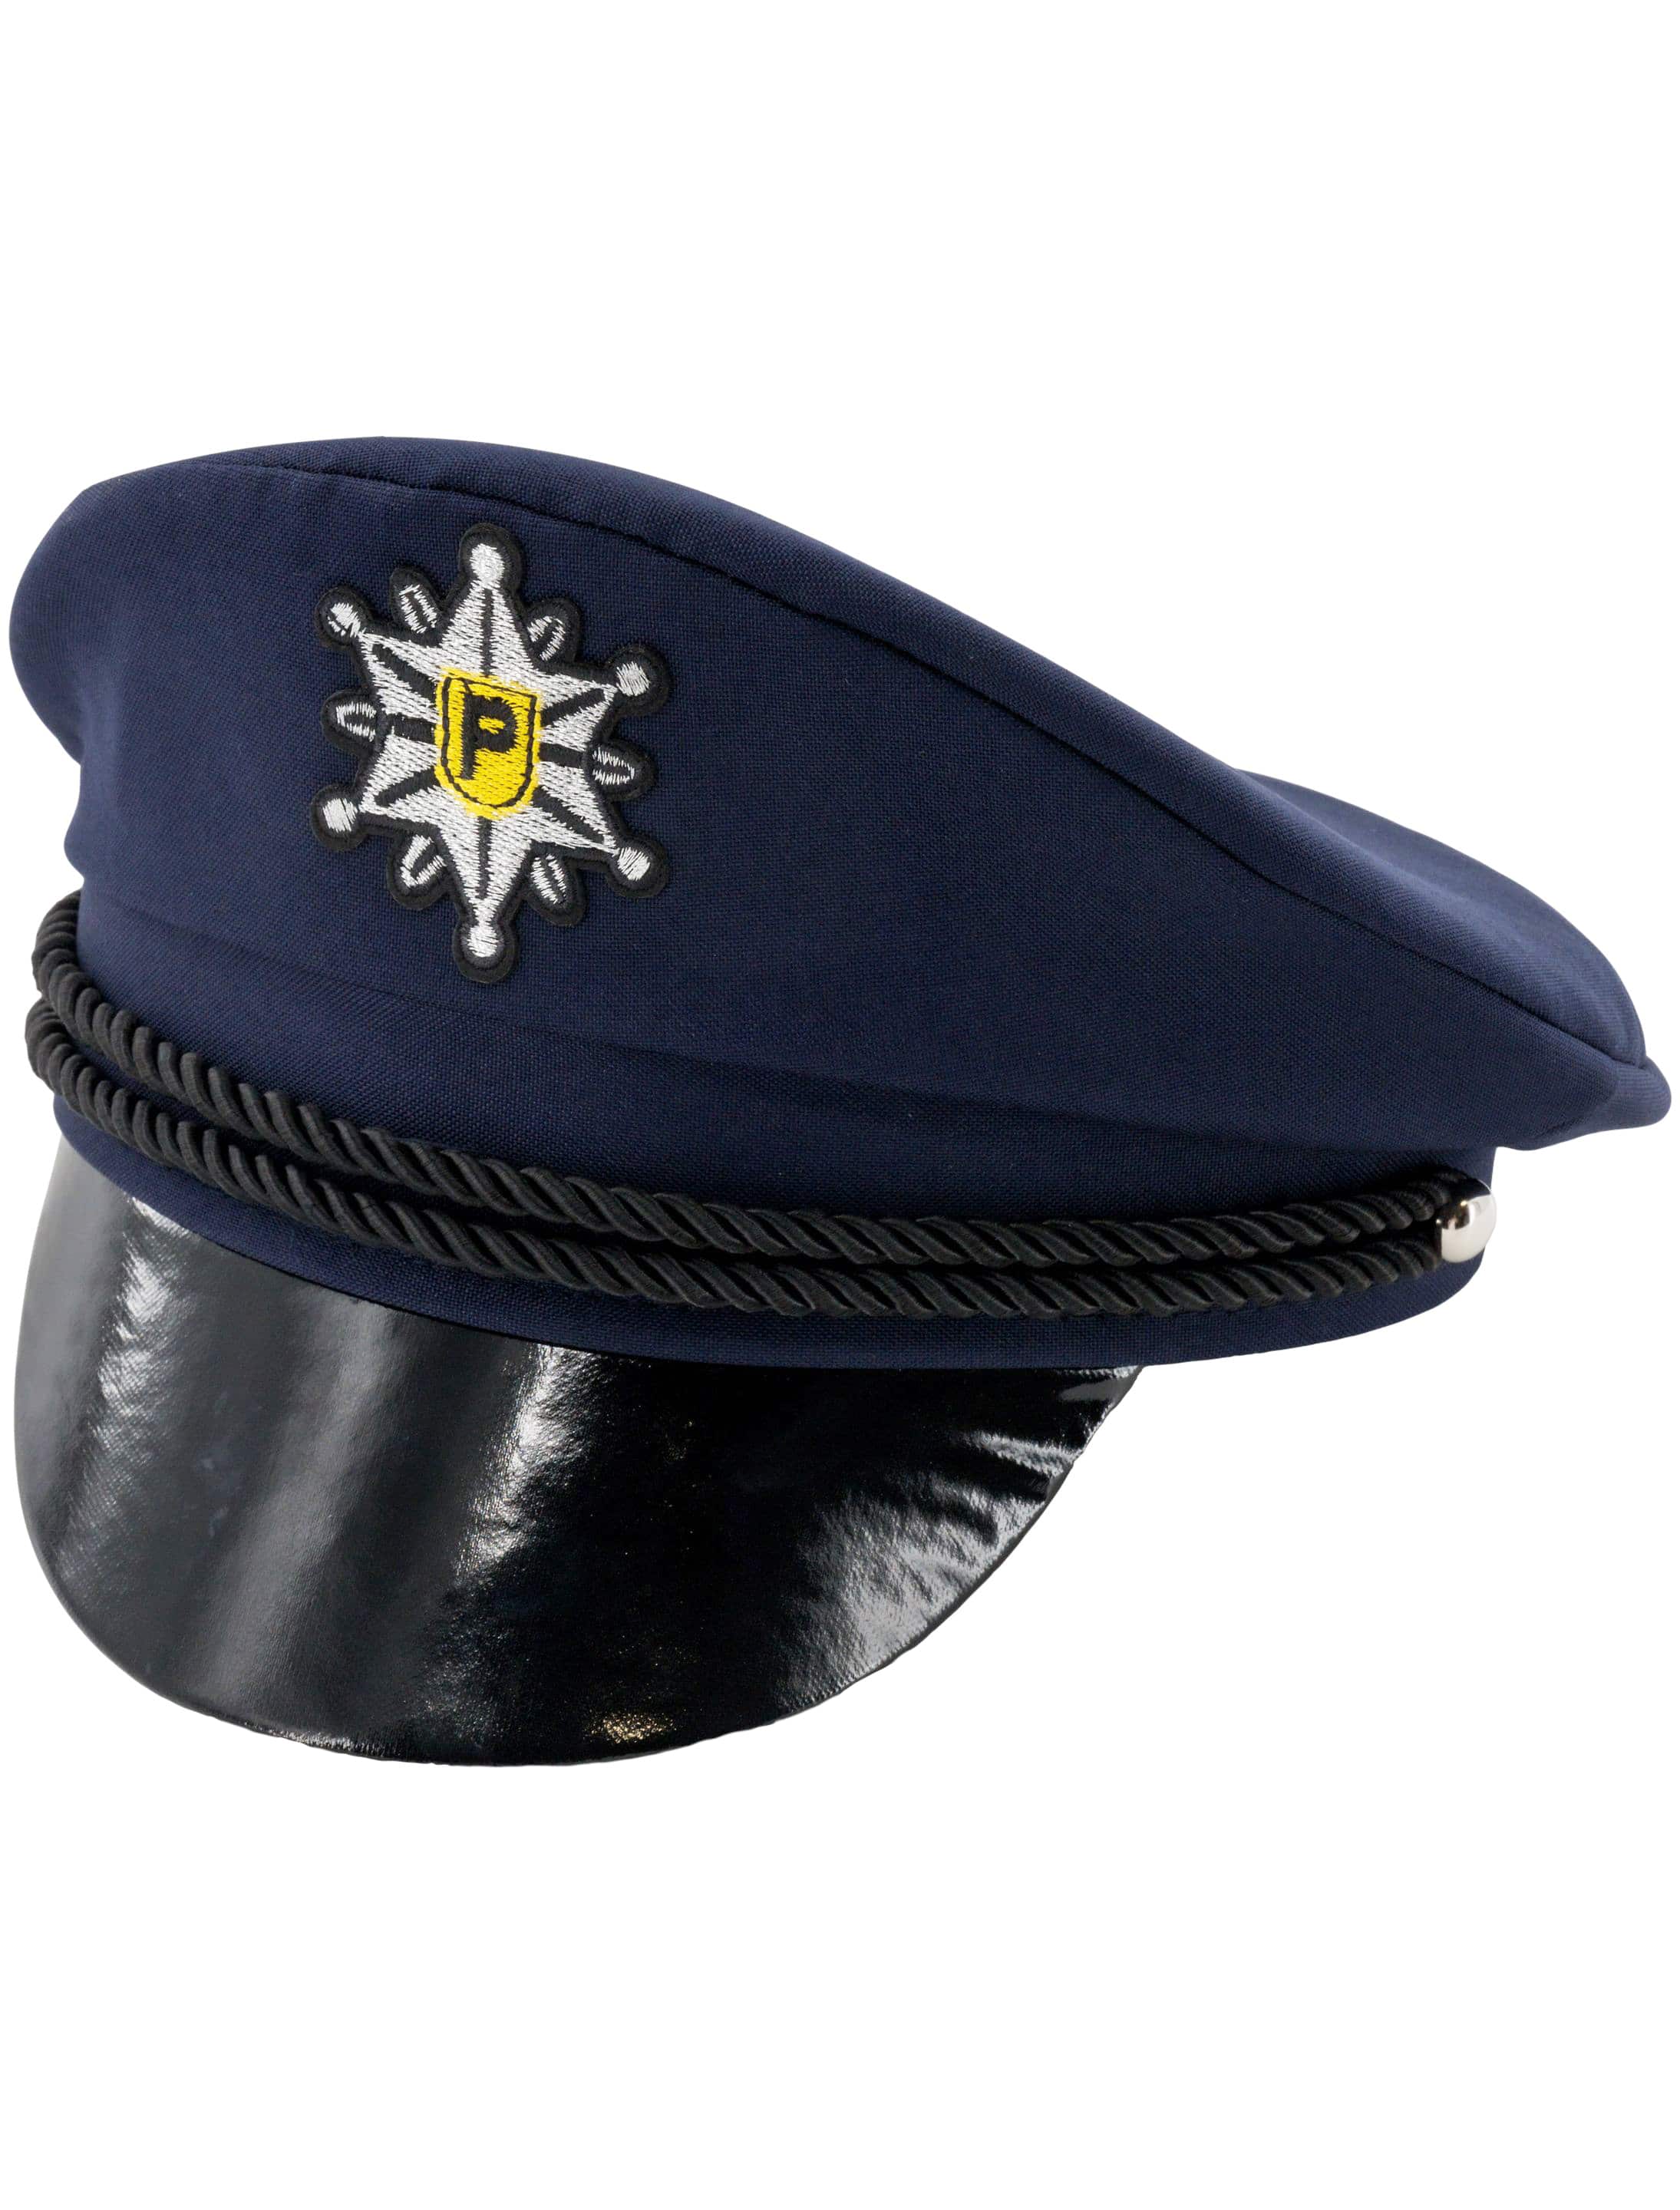 Polizeimütze Kinder schwarz/blau one size